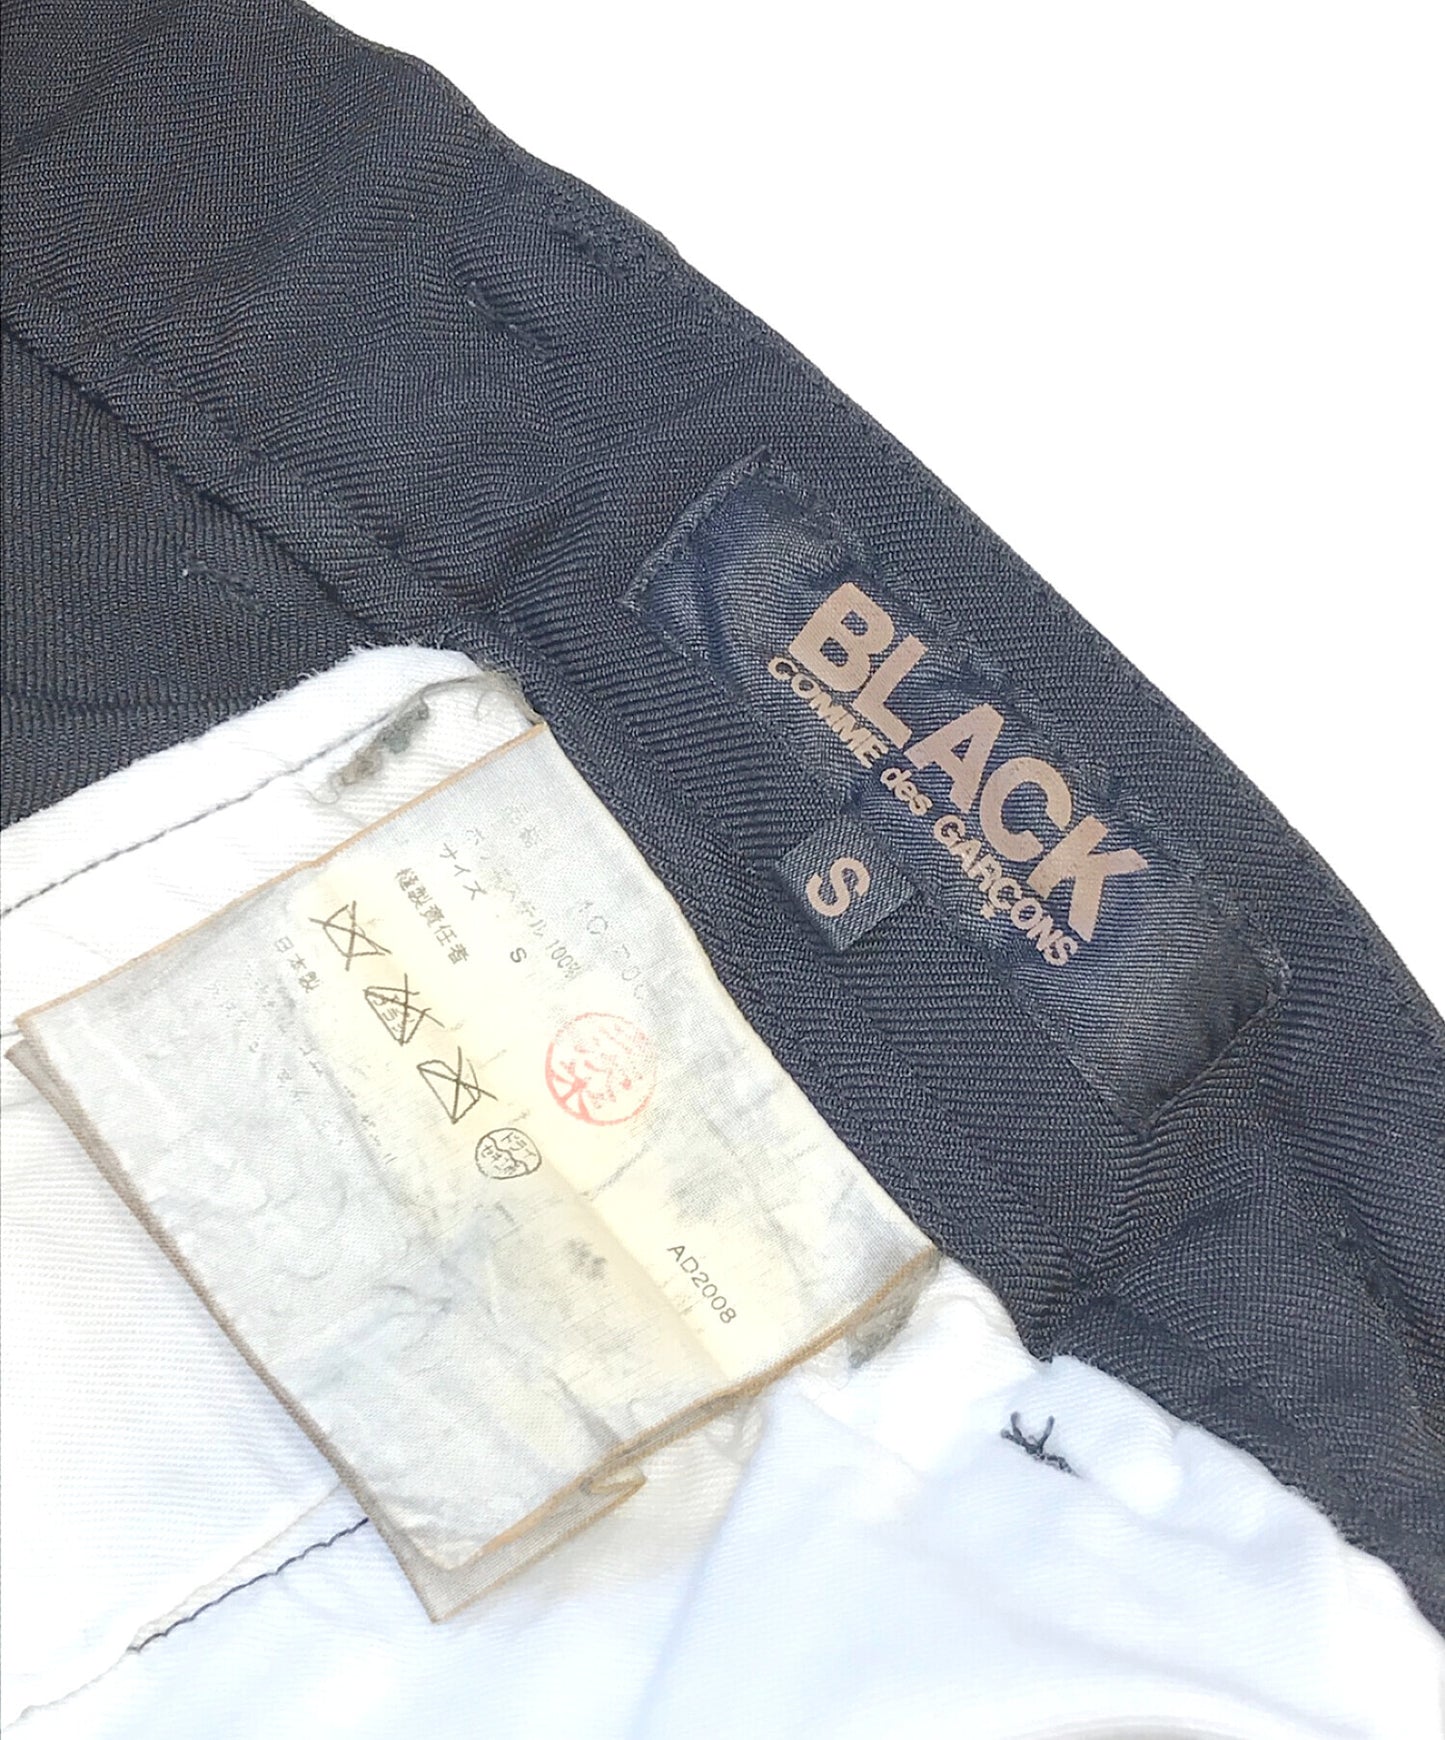 黑色COMME DES GARCONS POLY GABER SAROUEL短裤